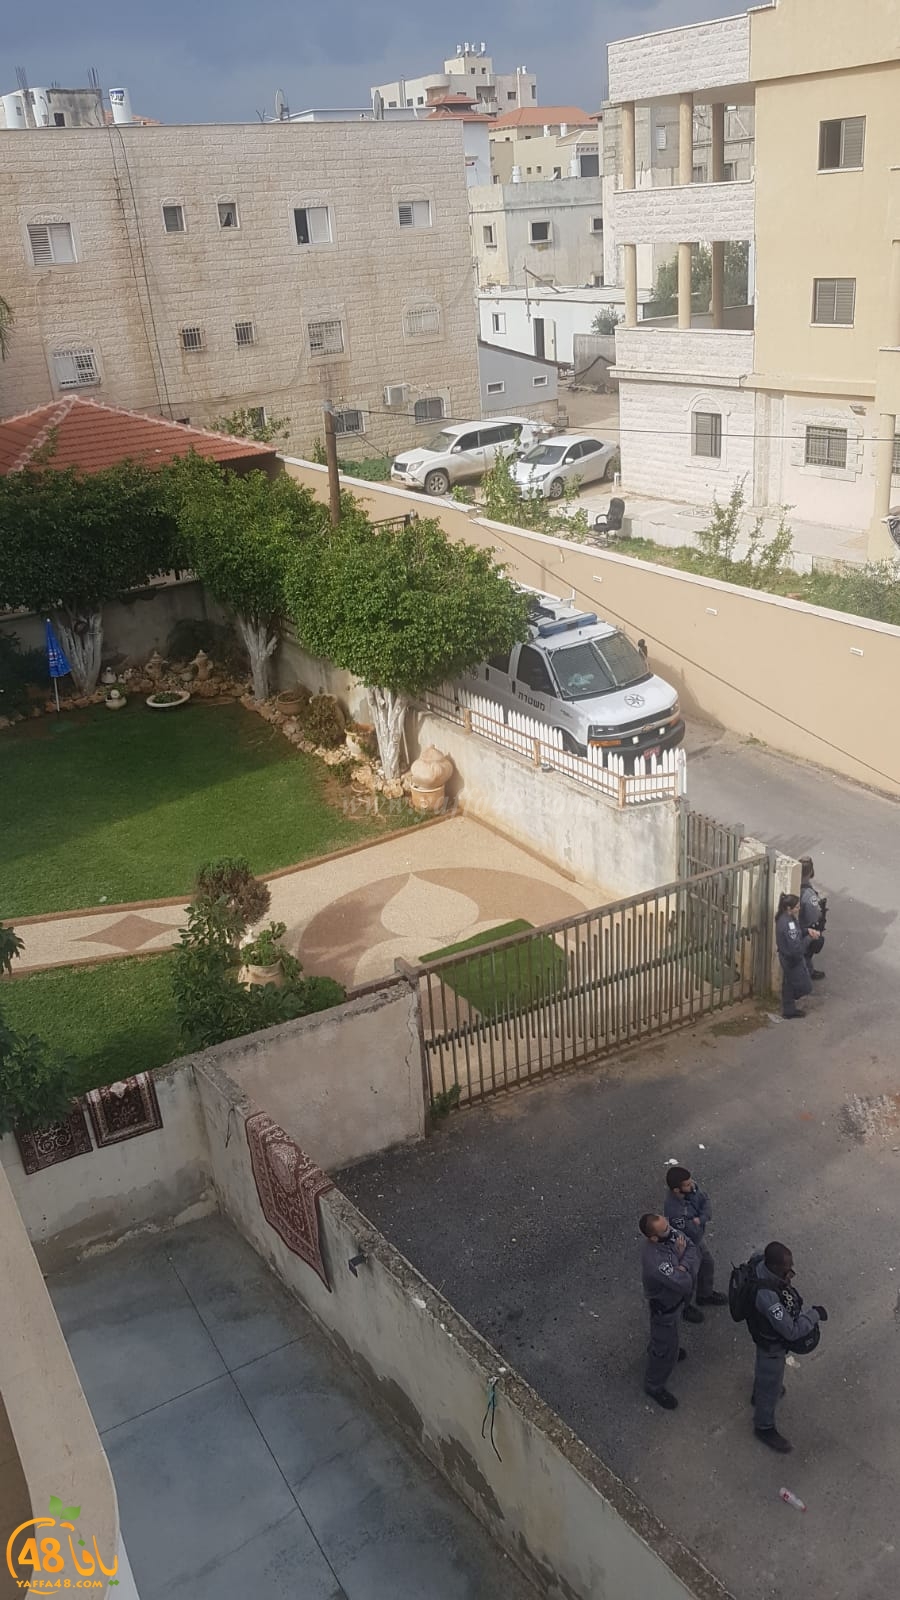  فيديو: هدم أحد البيوت في حي شنير باللد تحت حراسة مشددة من الشرطة